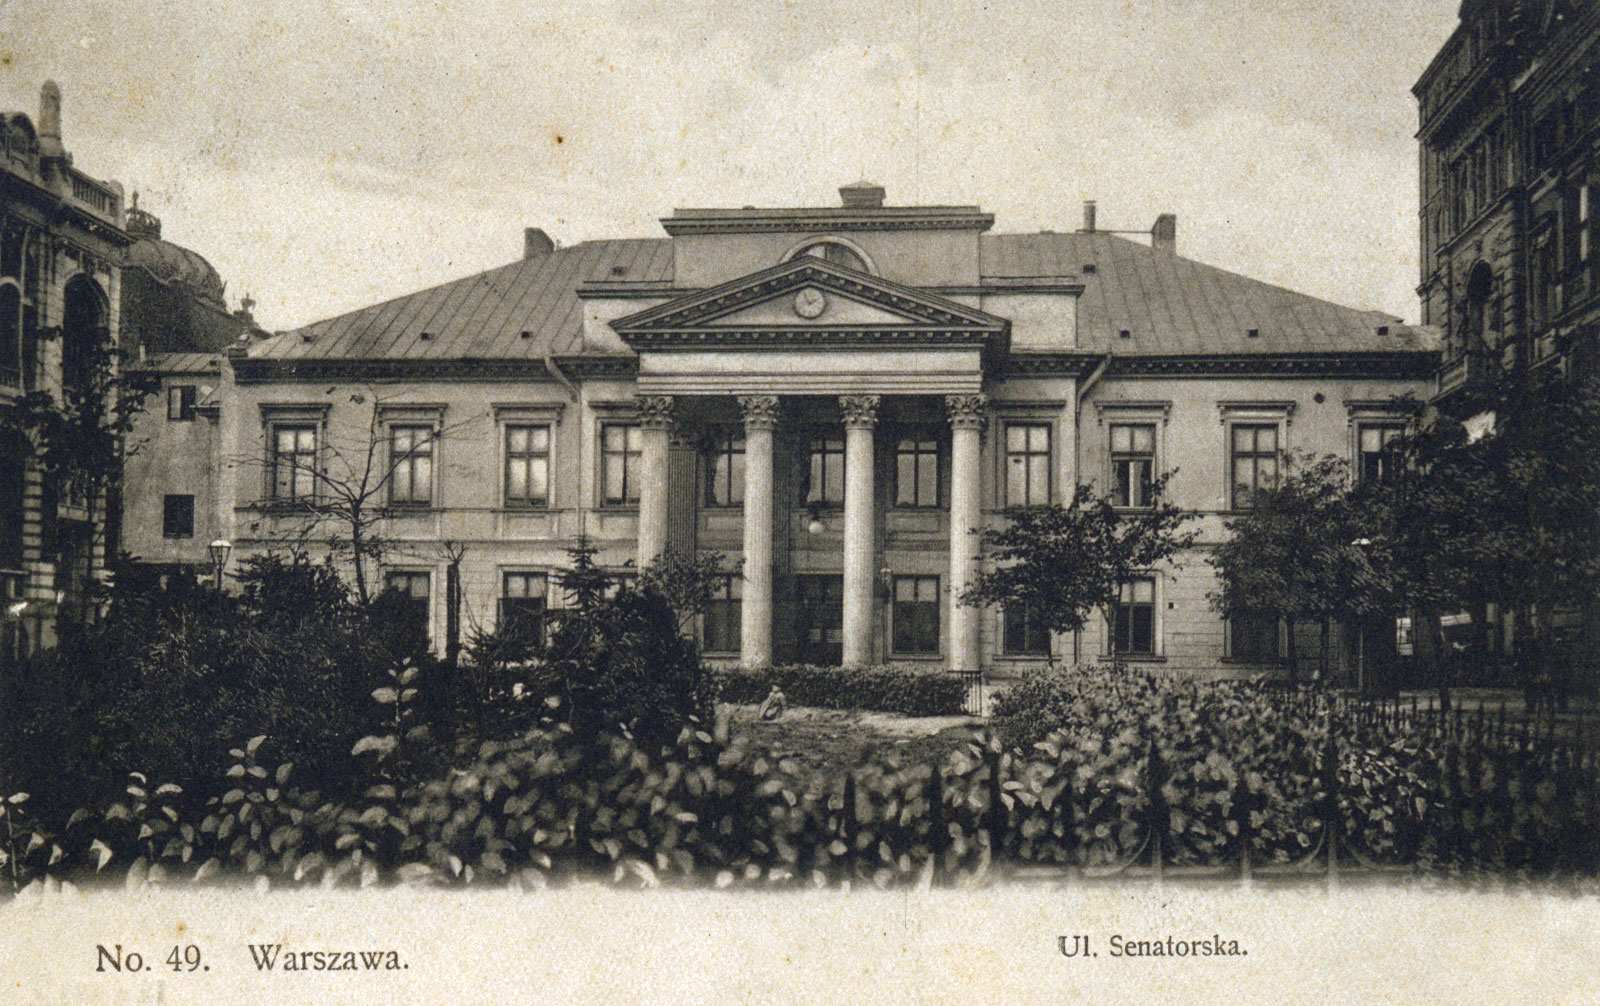 Ul. Senatorska, Pałac Mniszchów